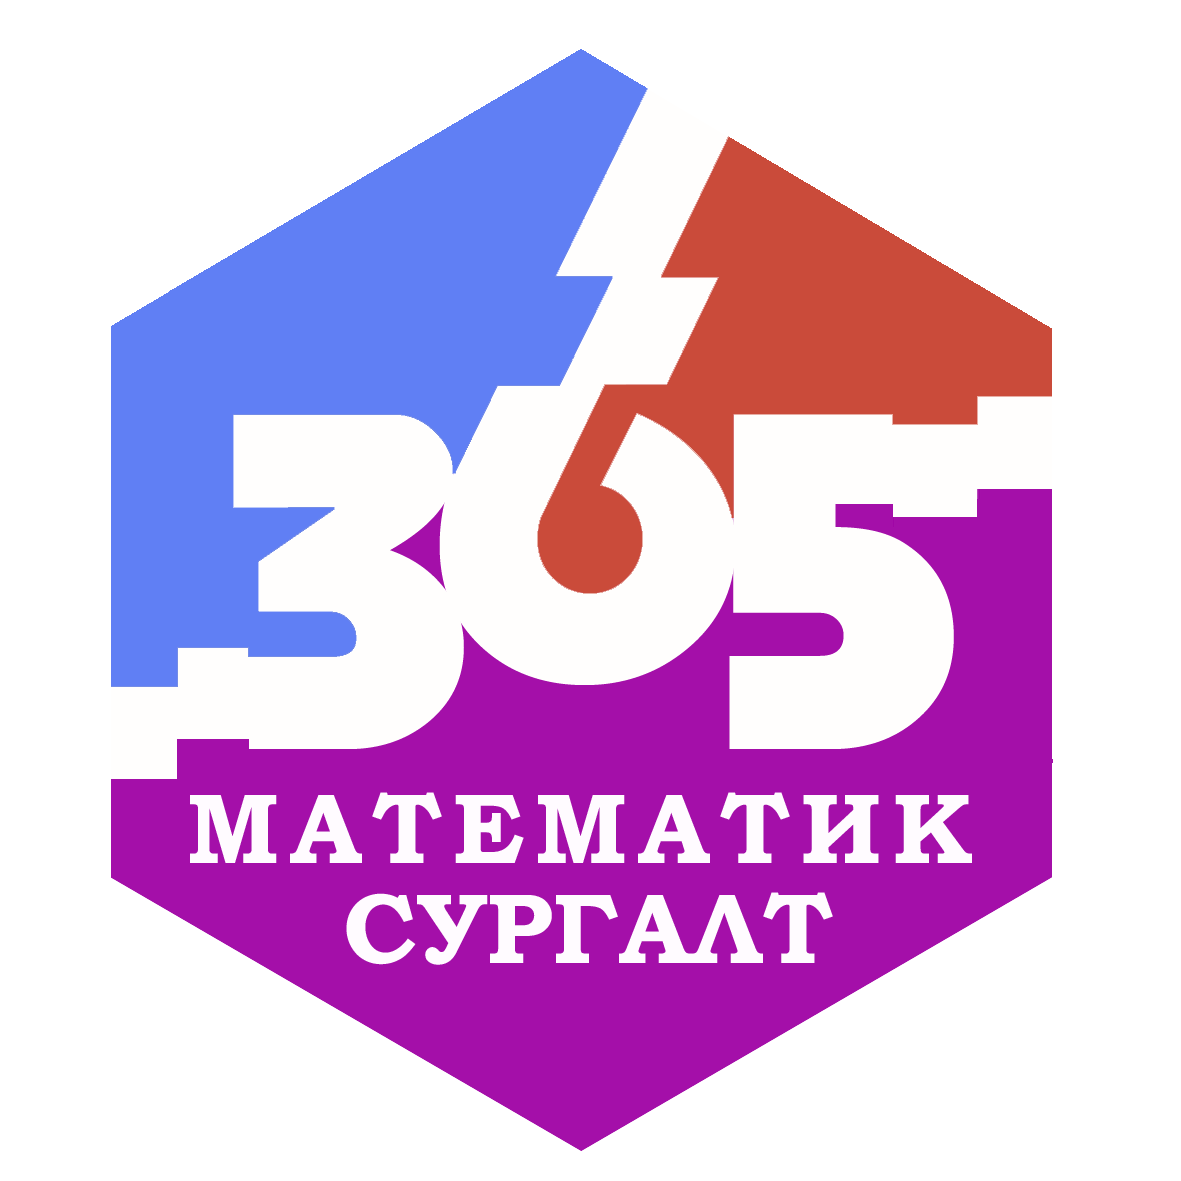 365 - Математикийн сургалт